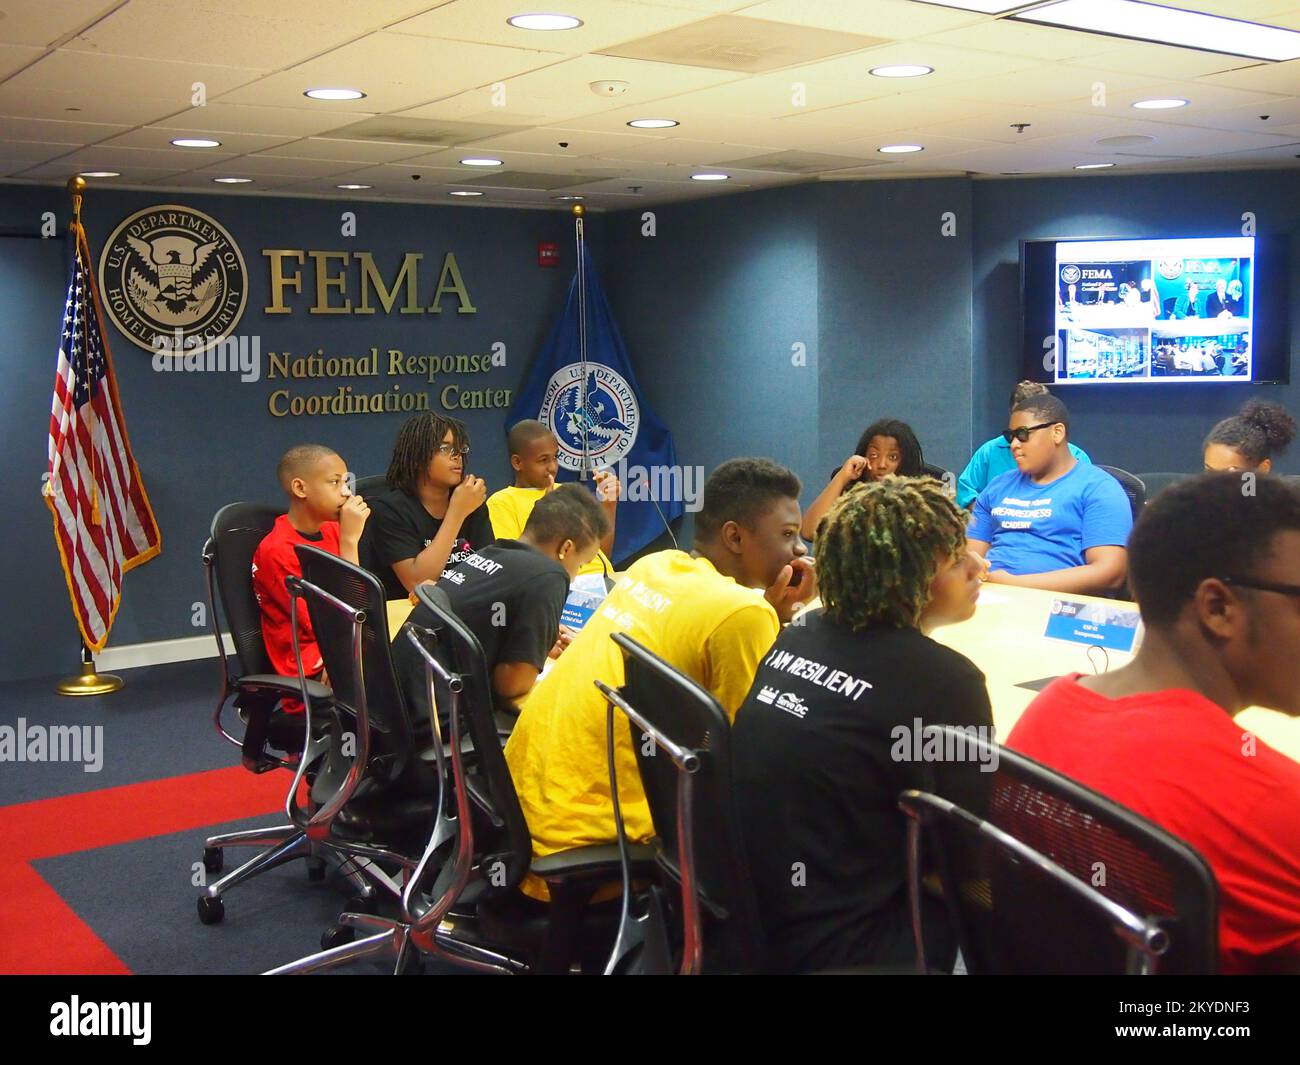 Betreuen Sie Mitglieder der DC Emergency Preparedness und Community Resilience Youth Academy, die den Besprechungsraum des FEMA National Response Coordination Center besuchen. Fotos zu Katastrophen- und Notfallmanagementprogrammen, Aktivitäten und Beamten Stockfoto